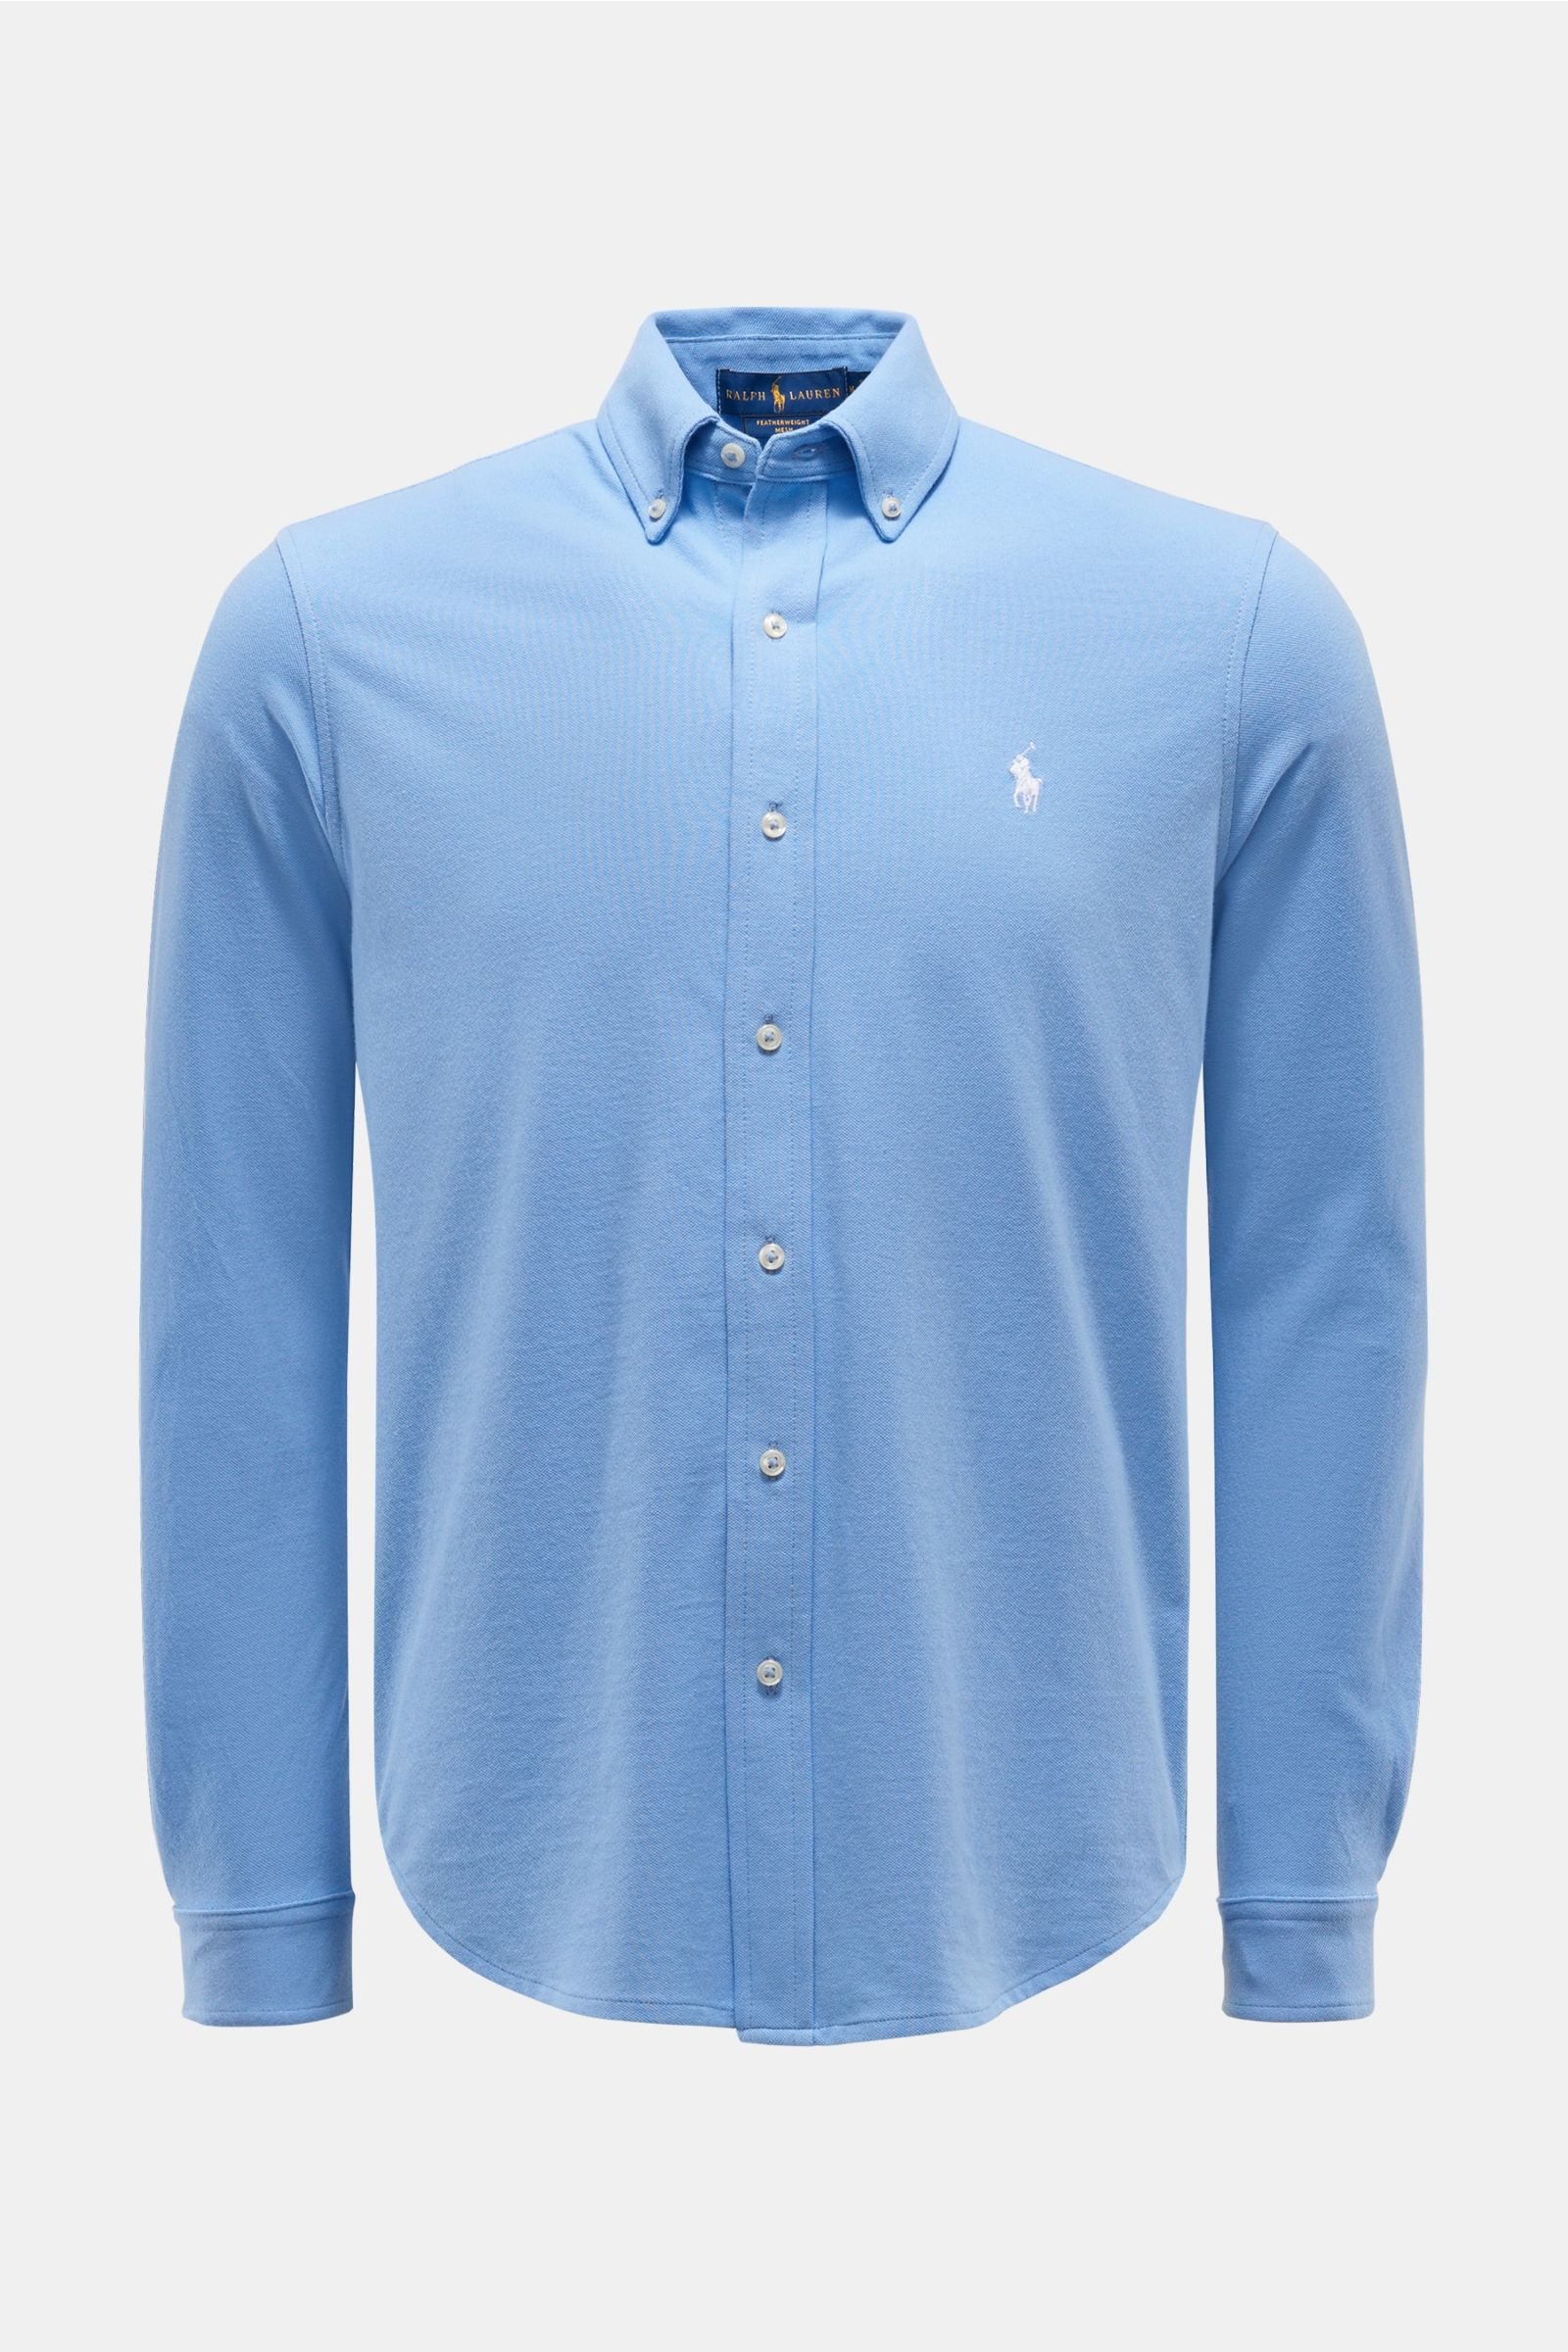 Jersey shirt button-down collar light blue